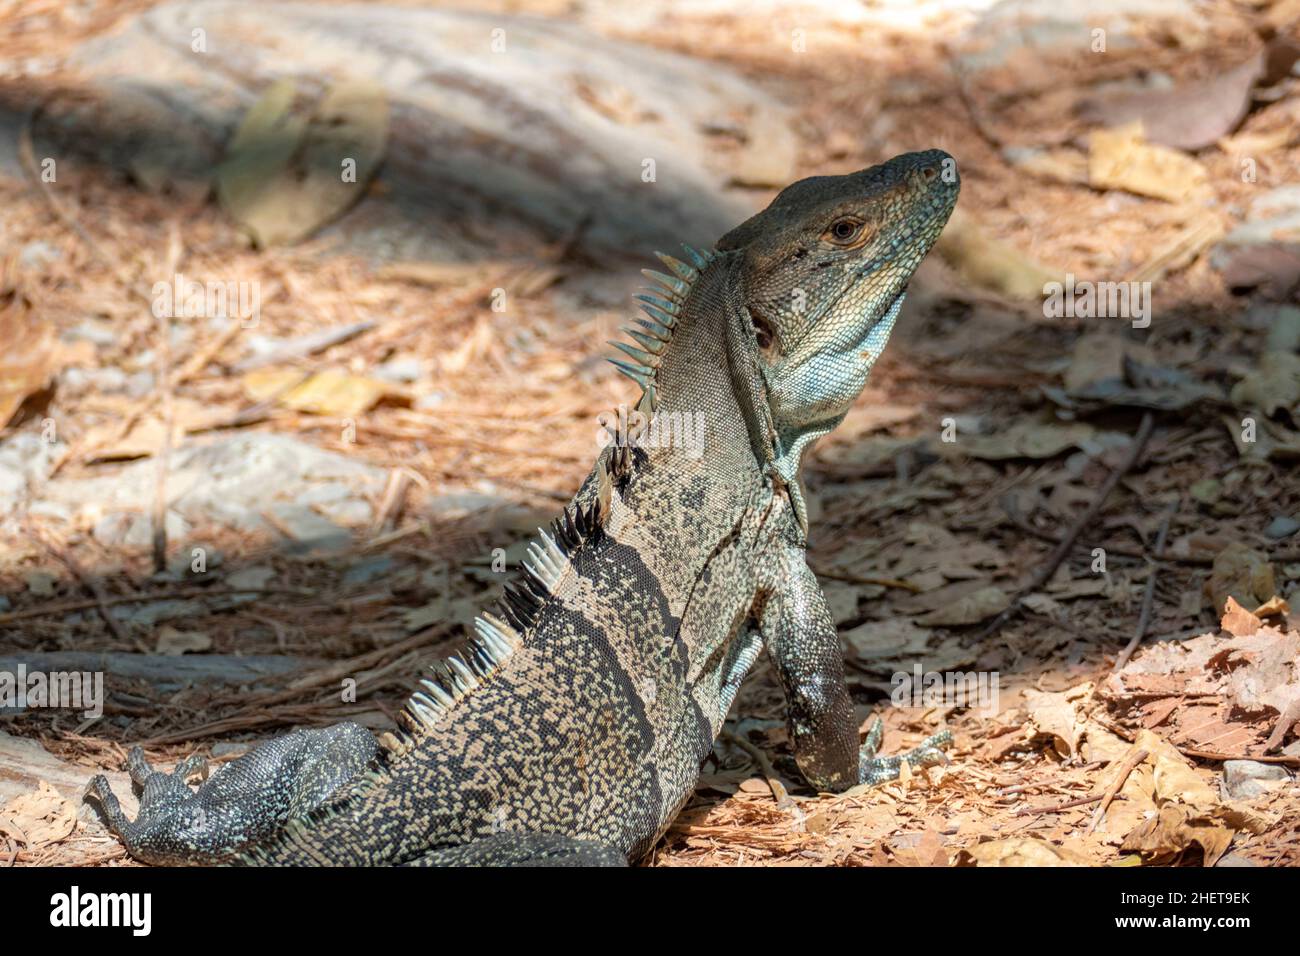 Lizard in Costa Rica in the jungle near Cabuya Stock Photo